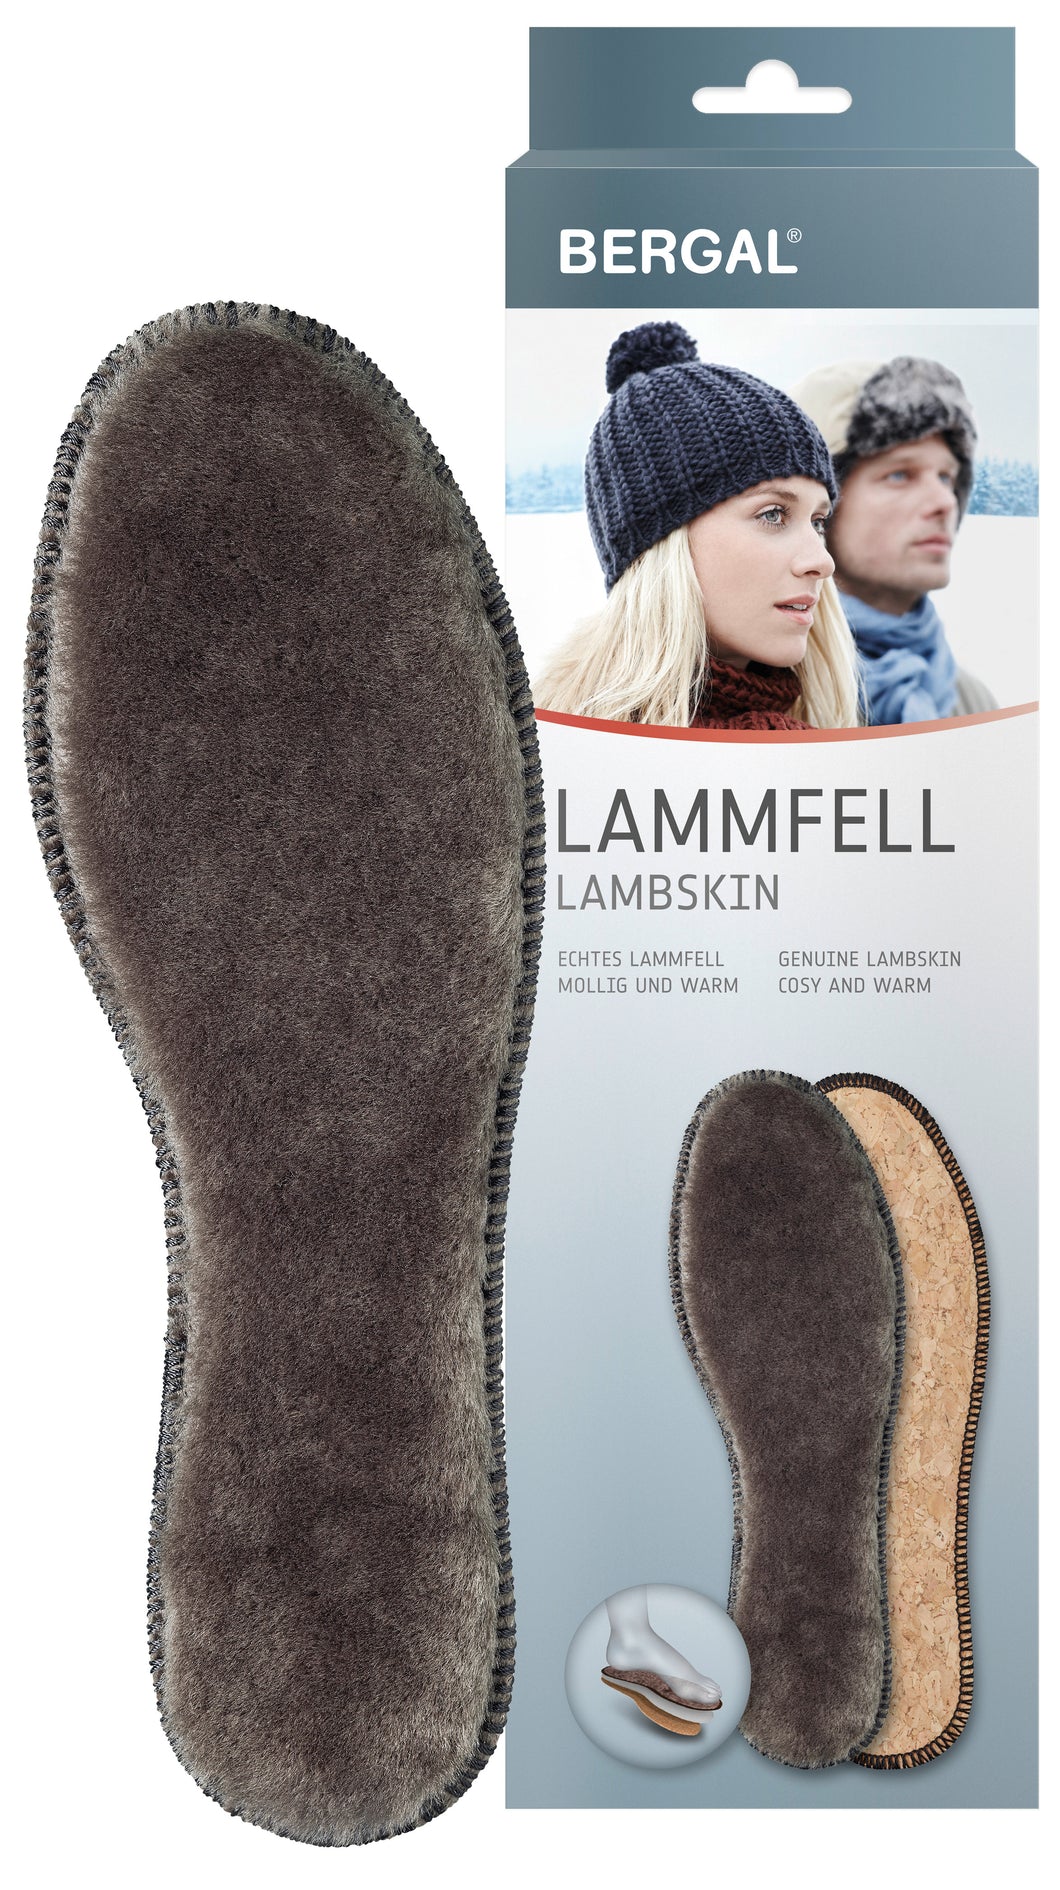 Стельки из овечьей шерсти Bergal Lambskin/Lambfell идеальное решение для зимней обуви! 1 пара